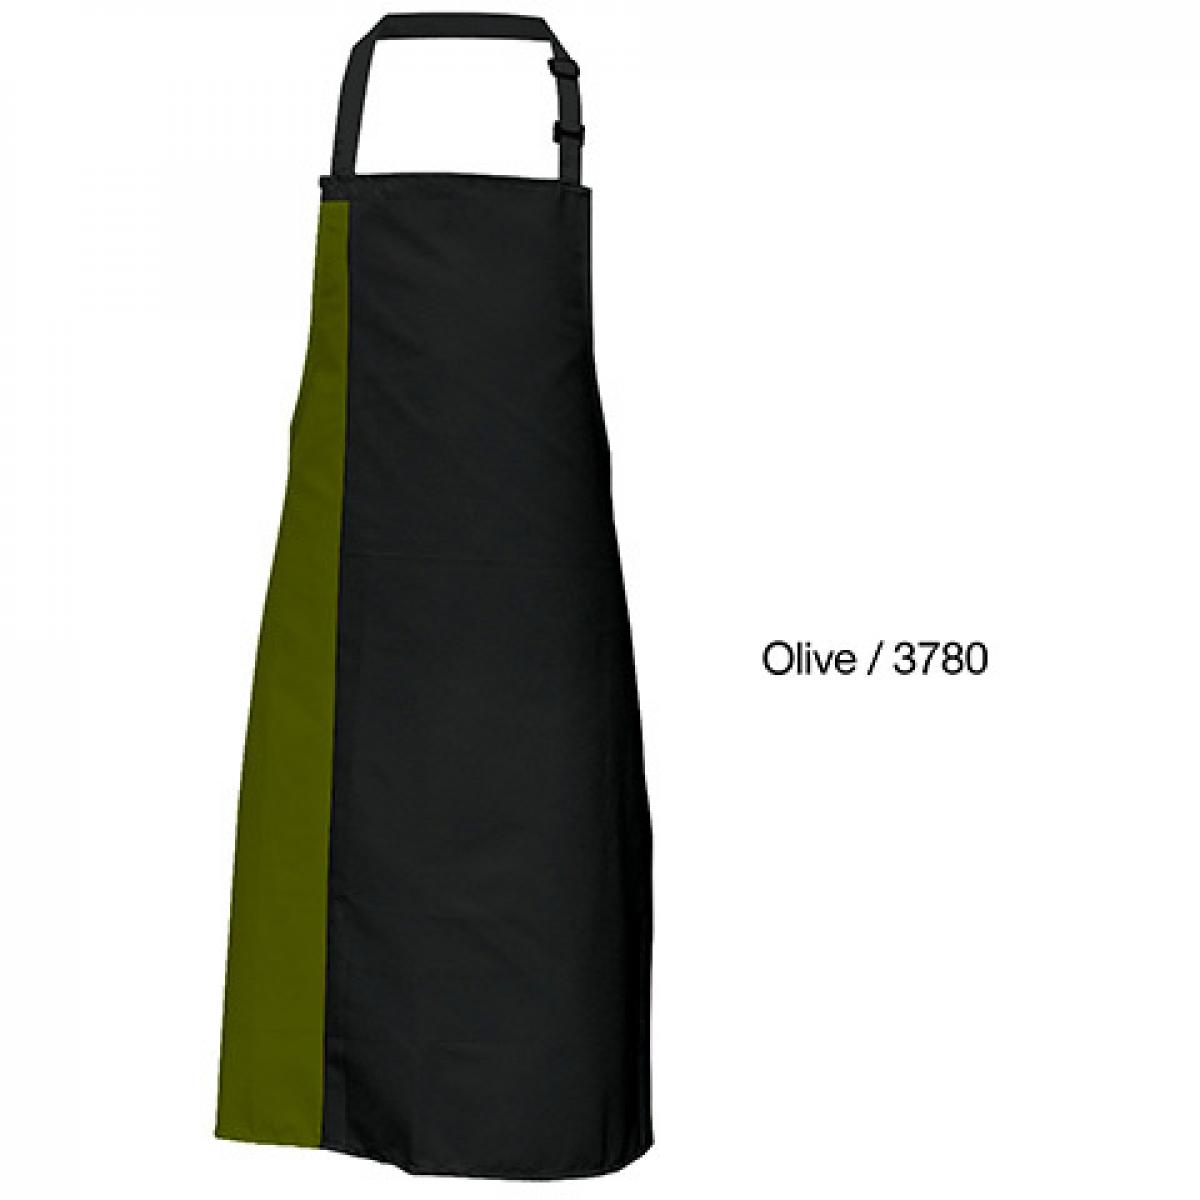 Hersteller: Link Kitchen Wear Herstellernummer: DS8572 Artikelbezeichnung: Duo Apron - 72 x 85 cm - Waschbar bis 60 °C Farbe: Black/Olive (ca. Pantone 378)